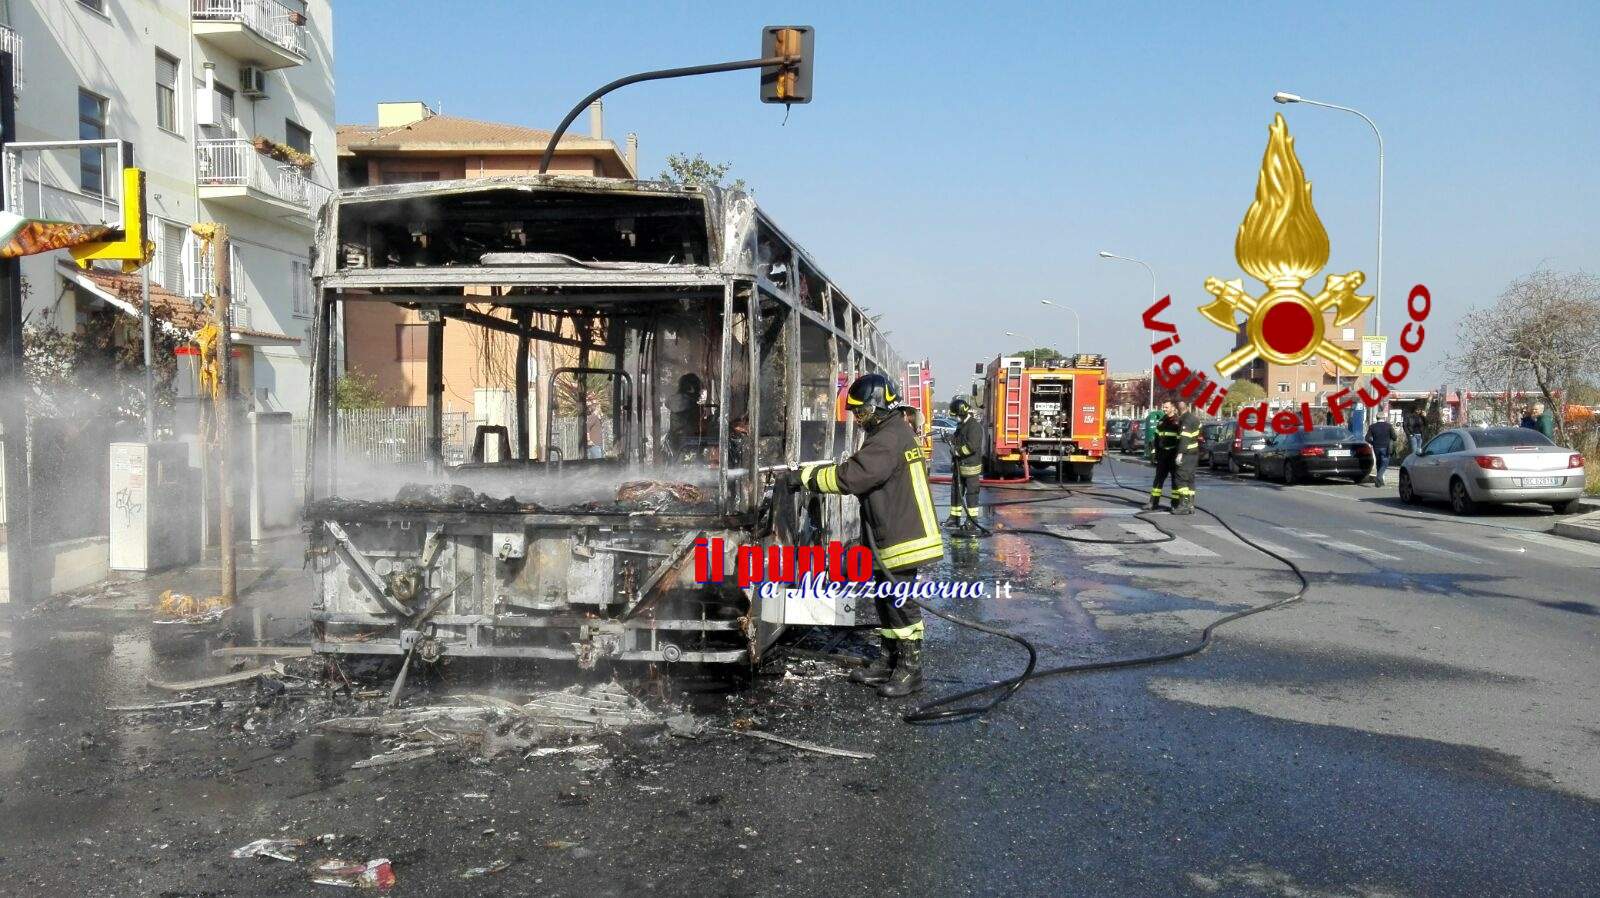 Autobus distrutto dalle fiamme. Paura a Ciampino